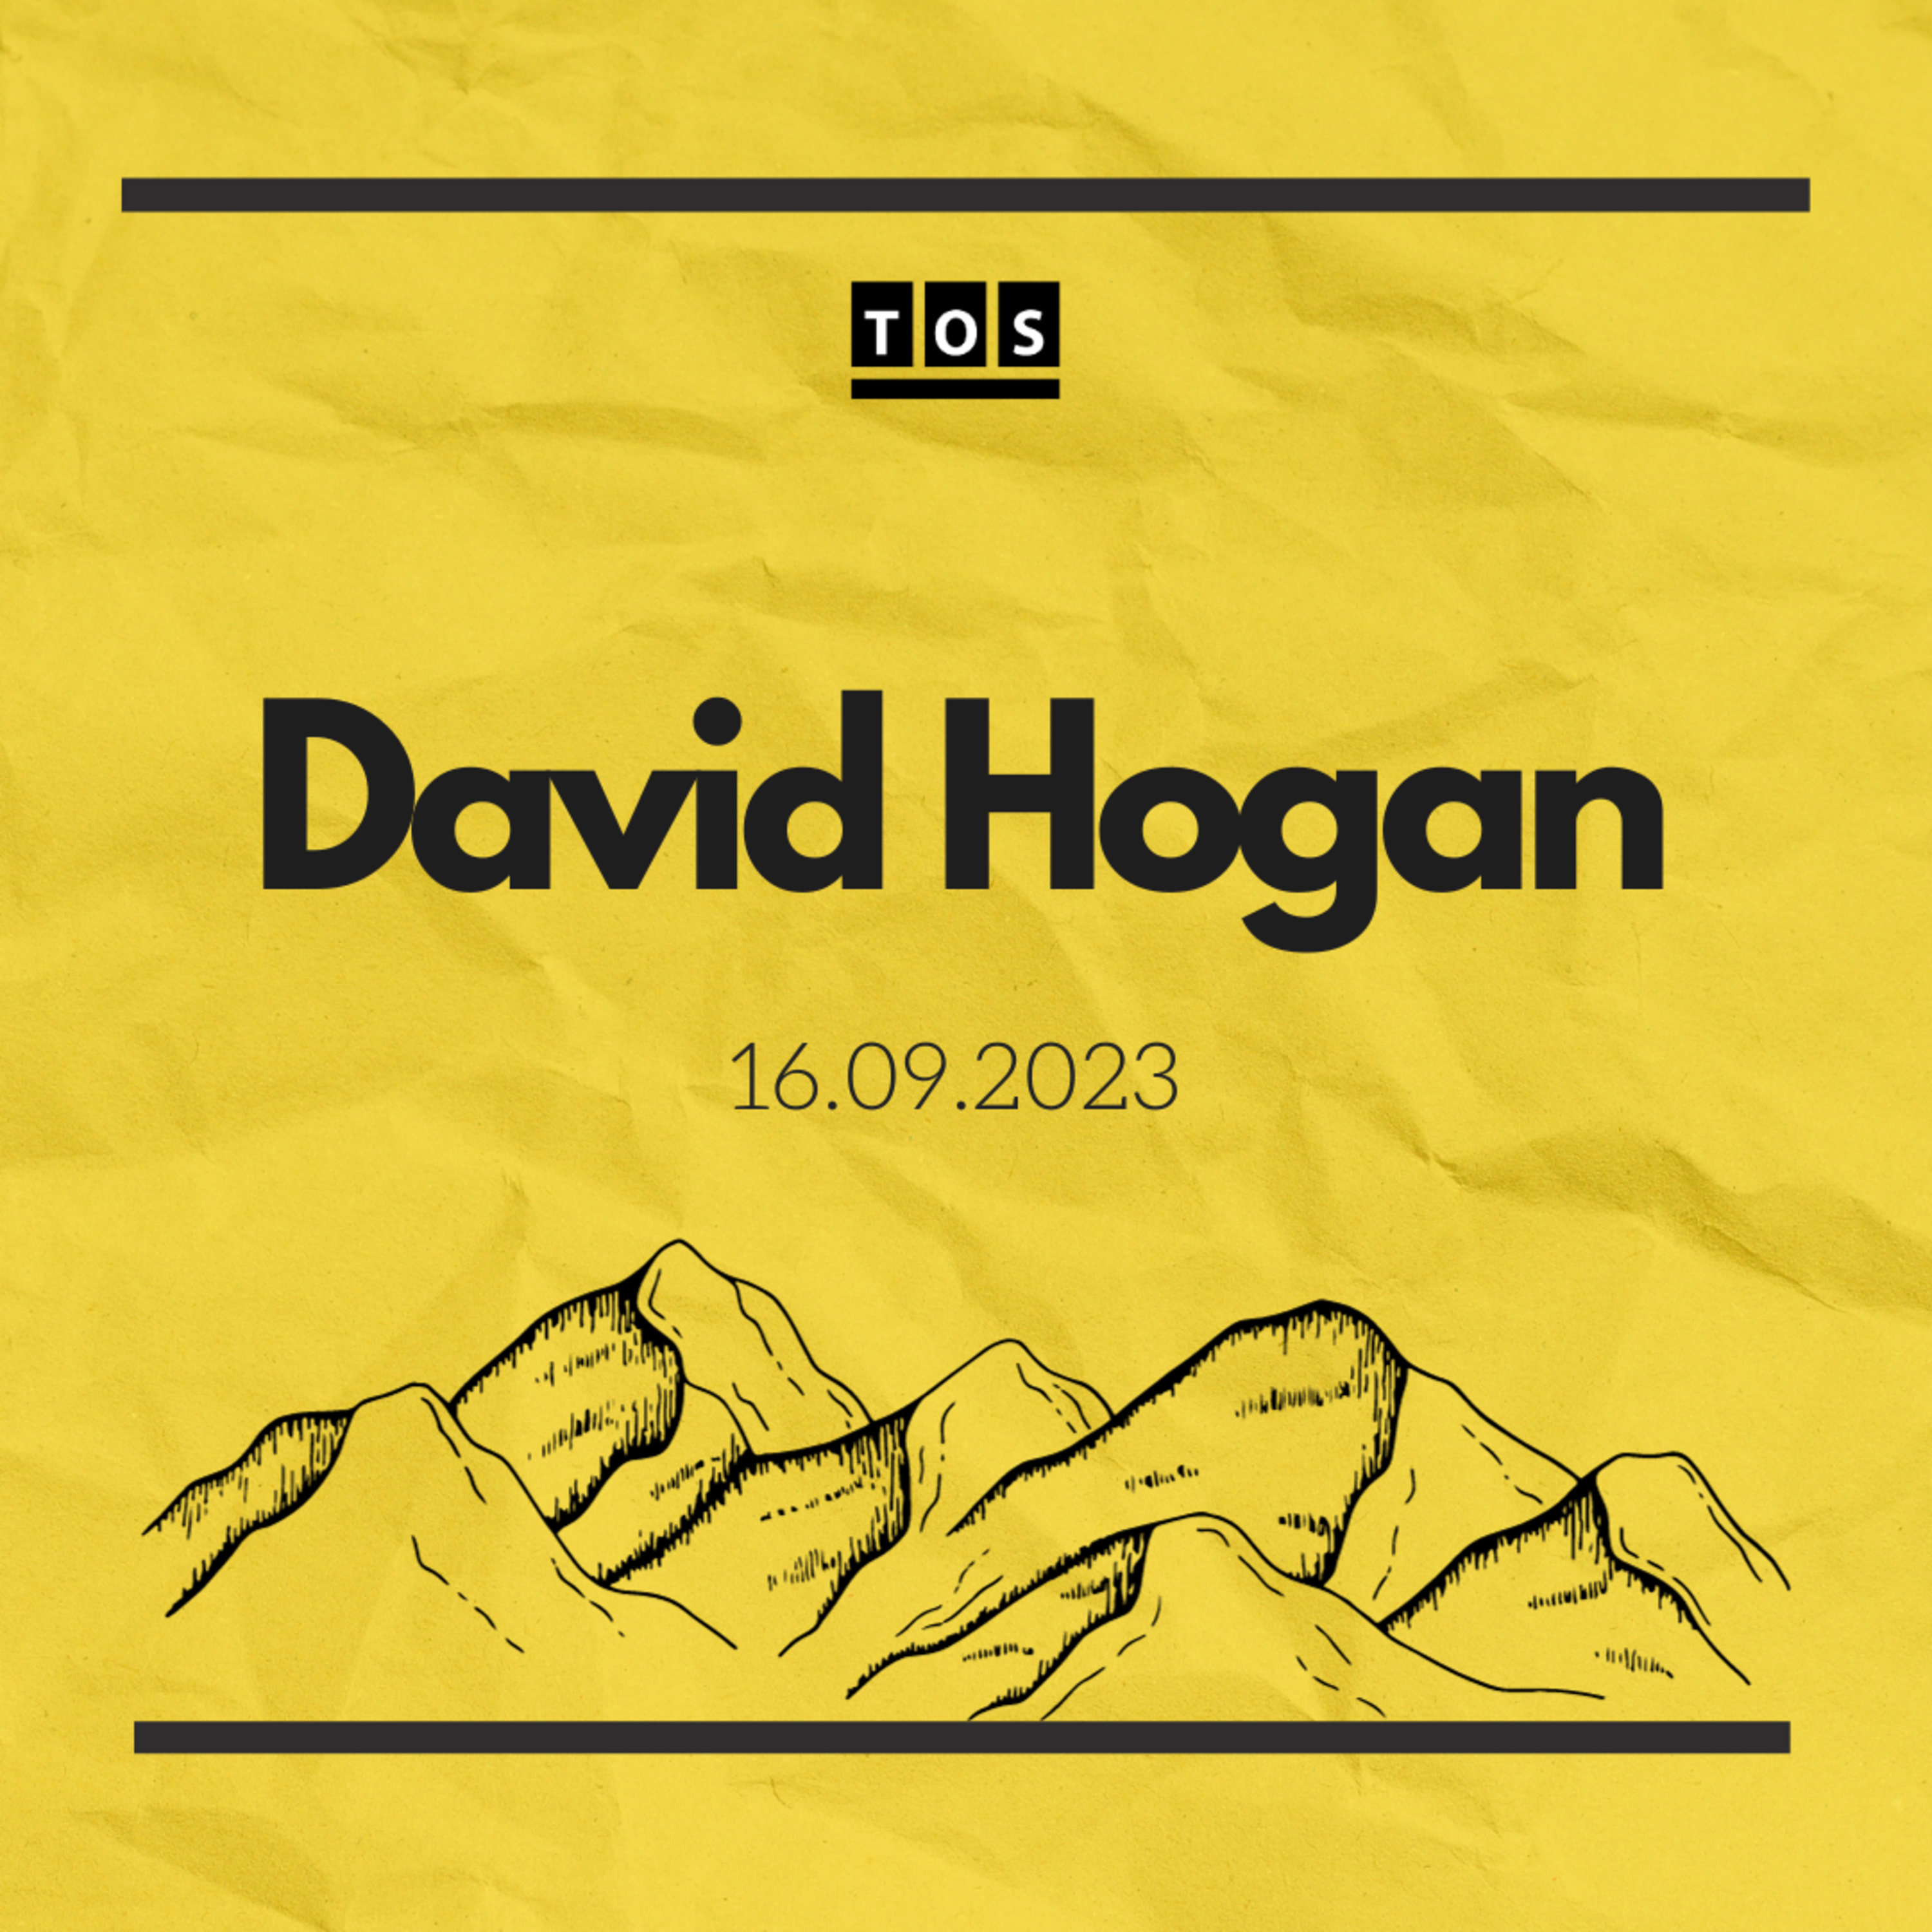 David Hogan - 16.09.2023 hero artwork